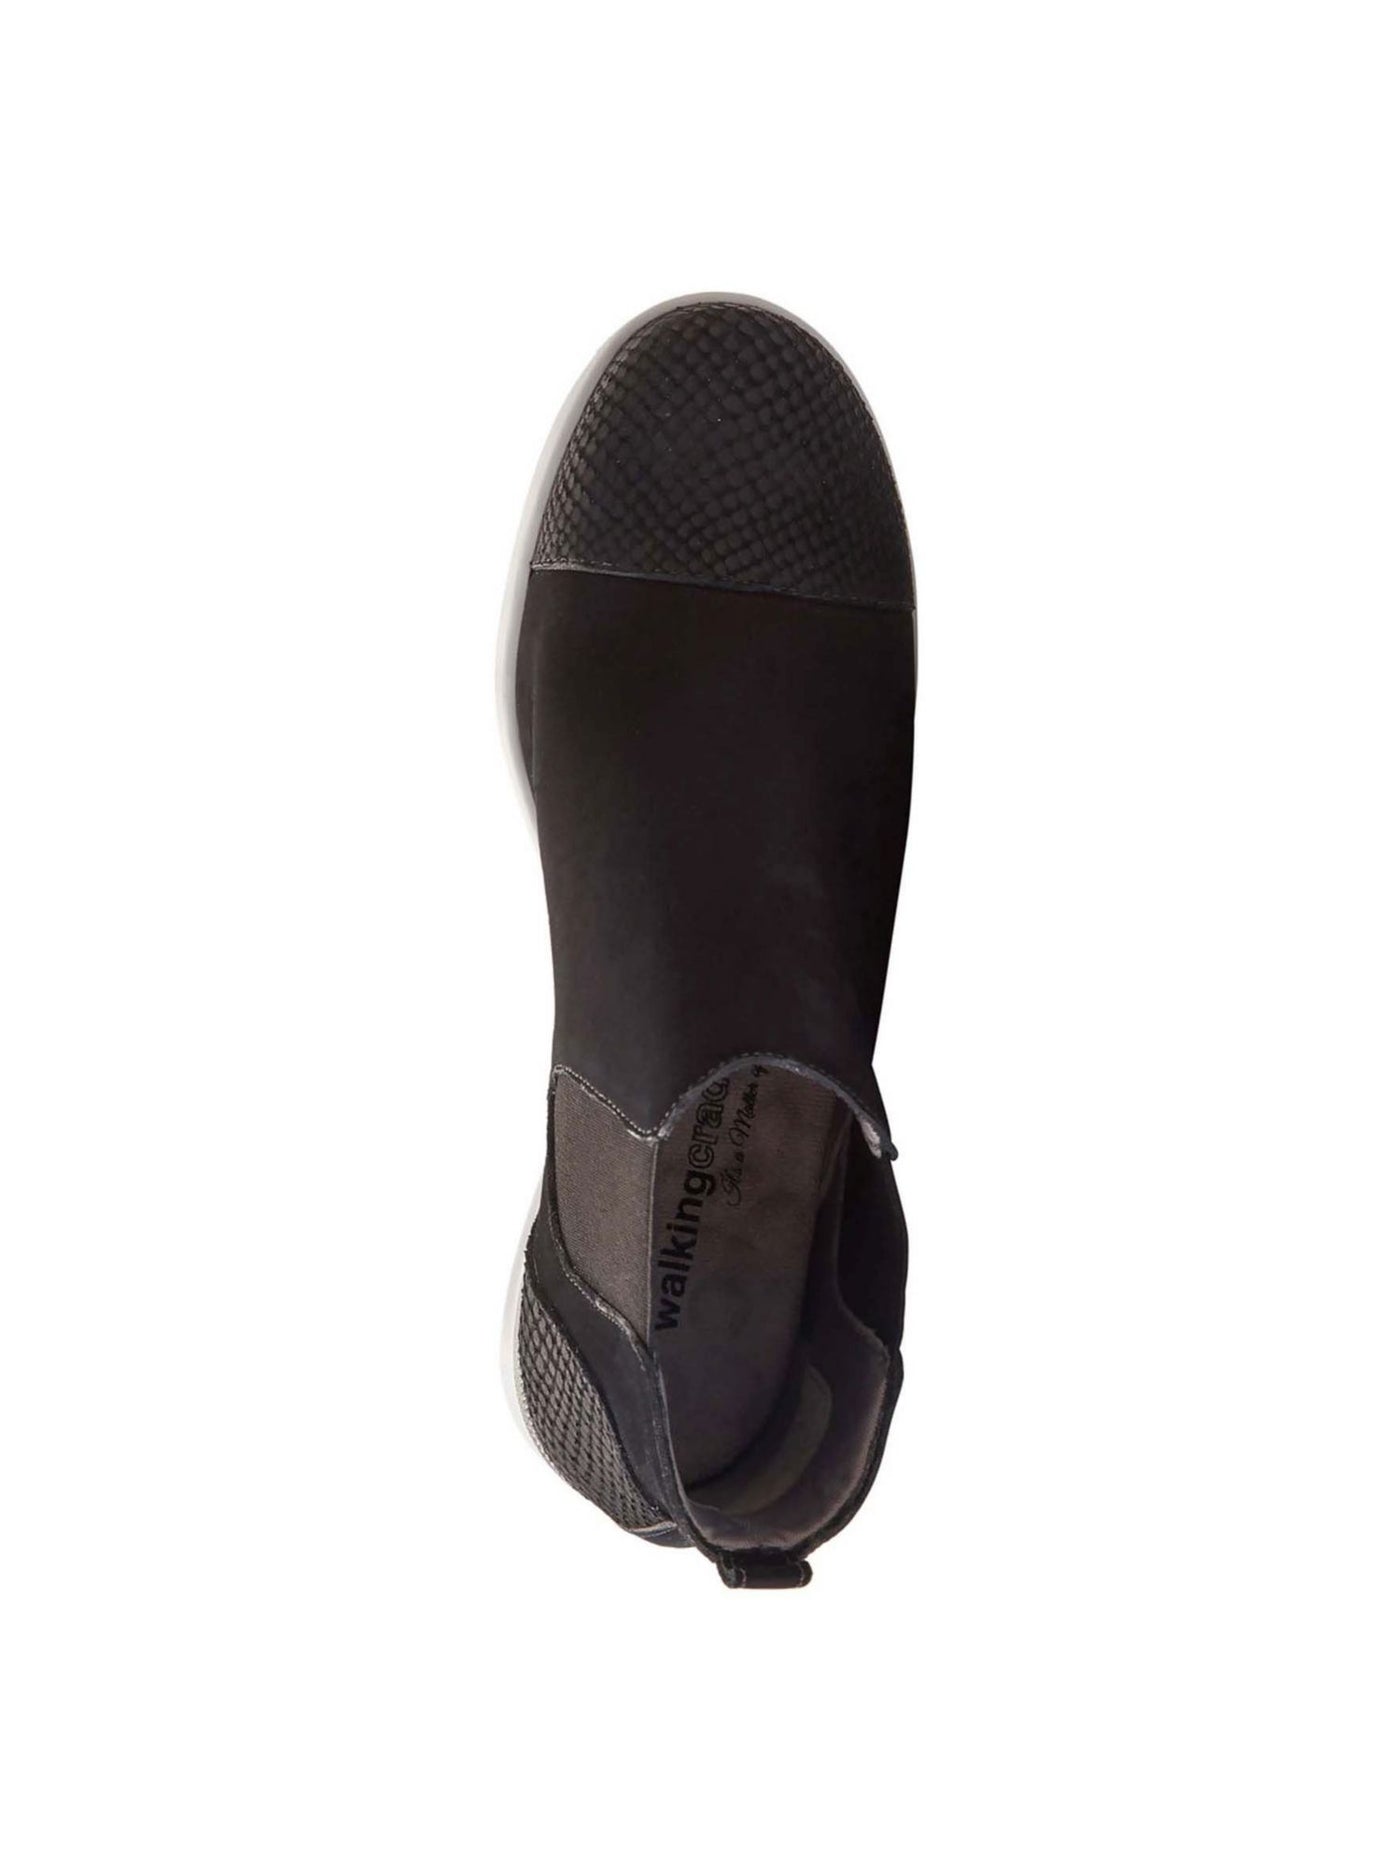 WALKING CRADLES Womens Black Slip Resistant Elastic Goring Heel Tab Cushioned Stretch Osmond Round Toe Wedge Slip On Leather Shootie 6 M